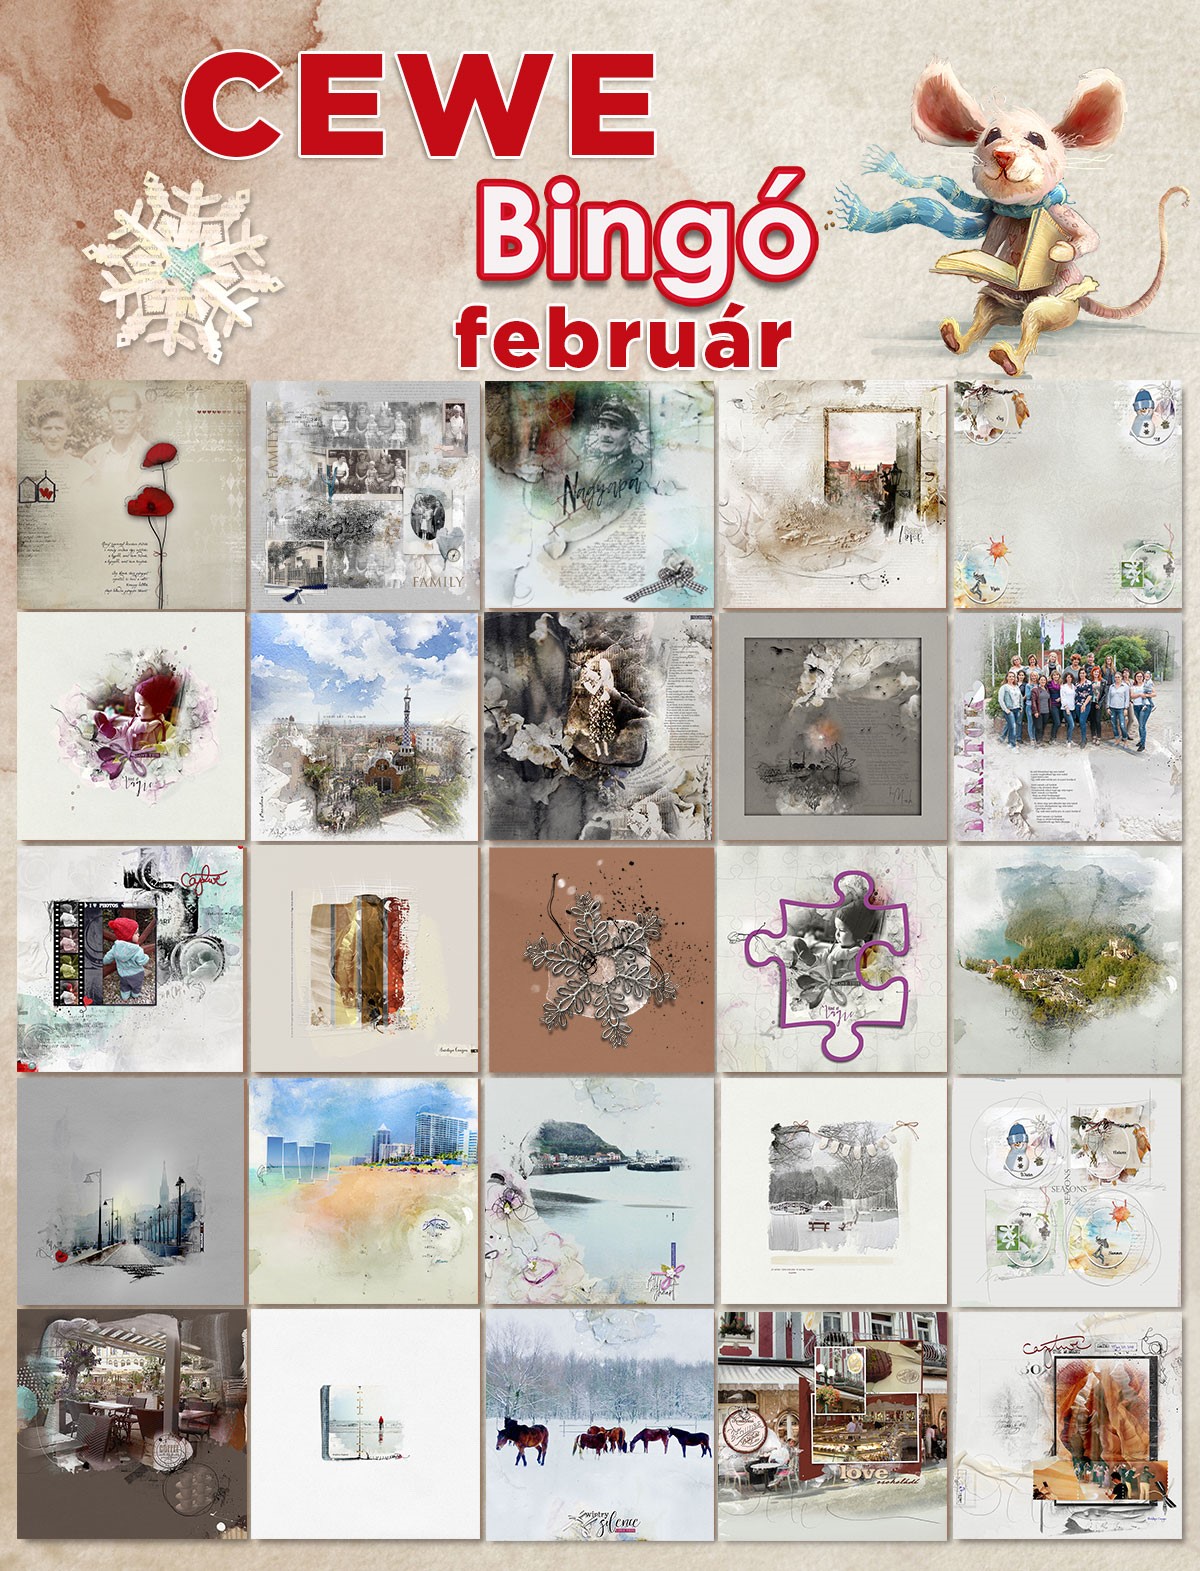 2019_bingo_02